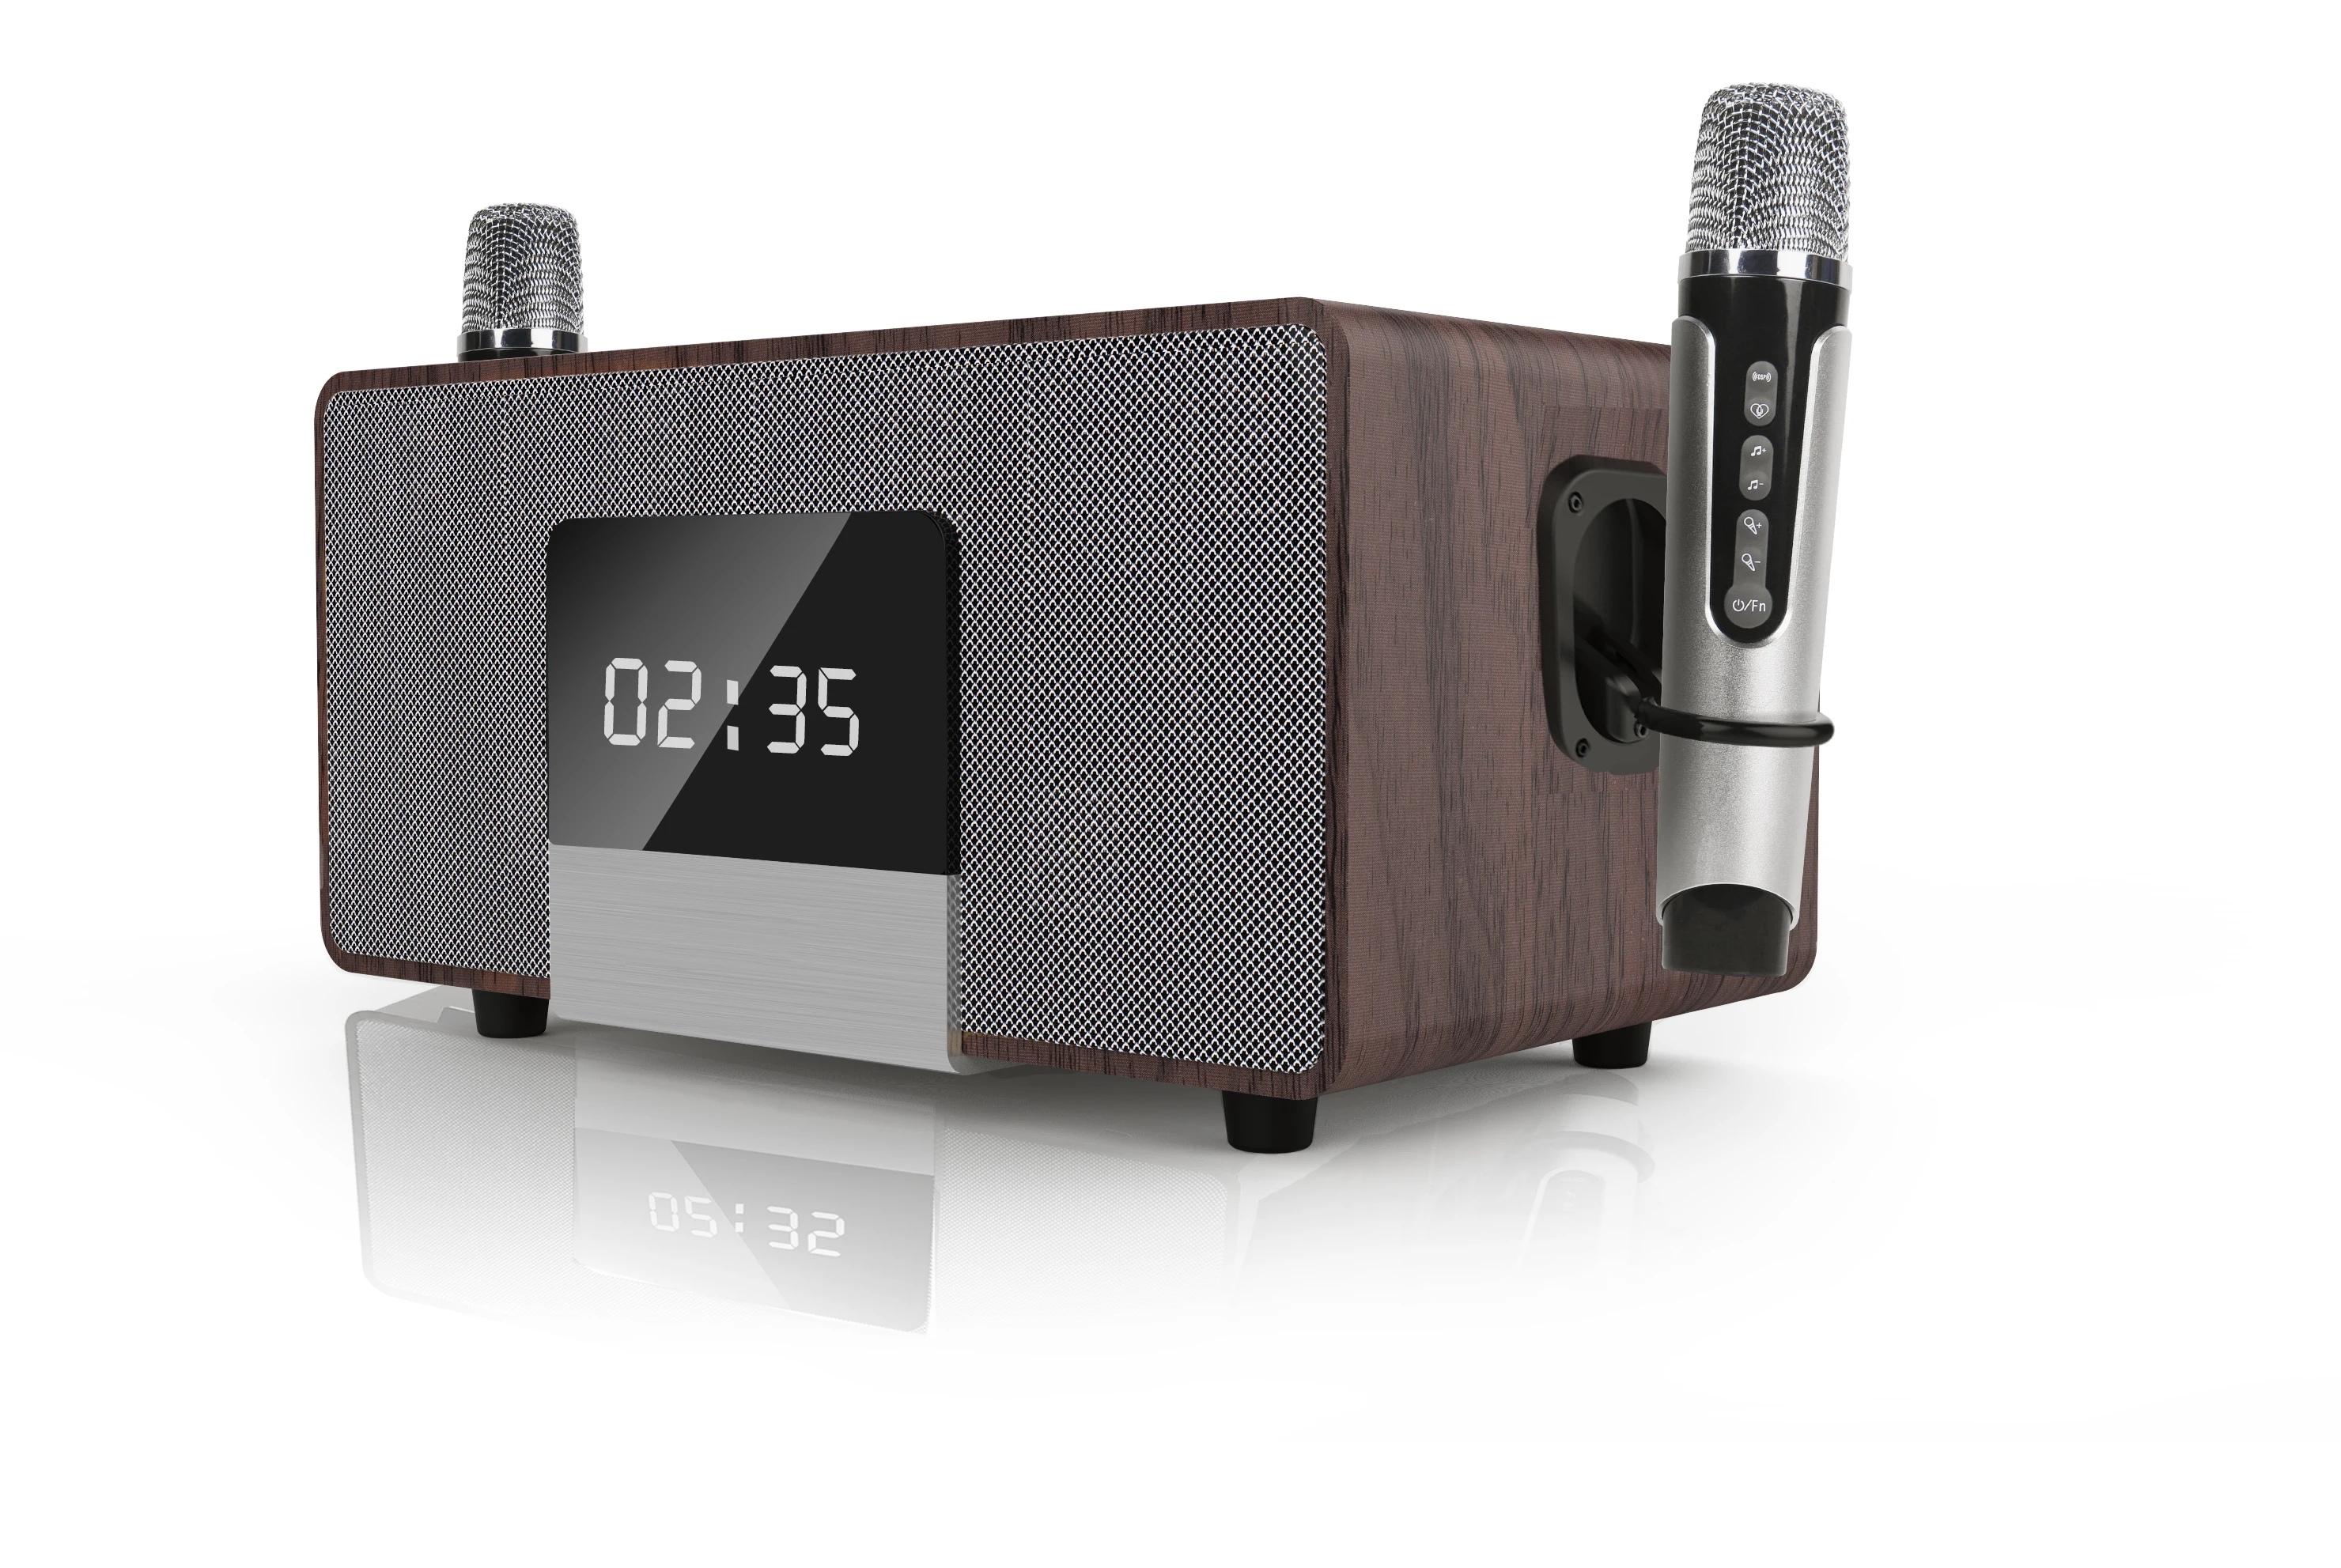  RHM K222 Karaoke Machine, with 2 Wireless Microphones